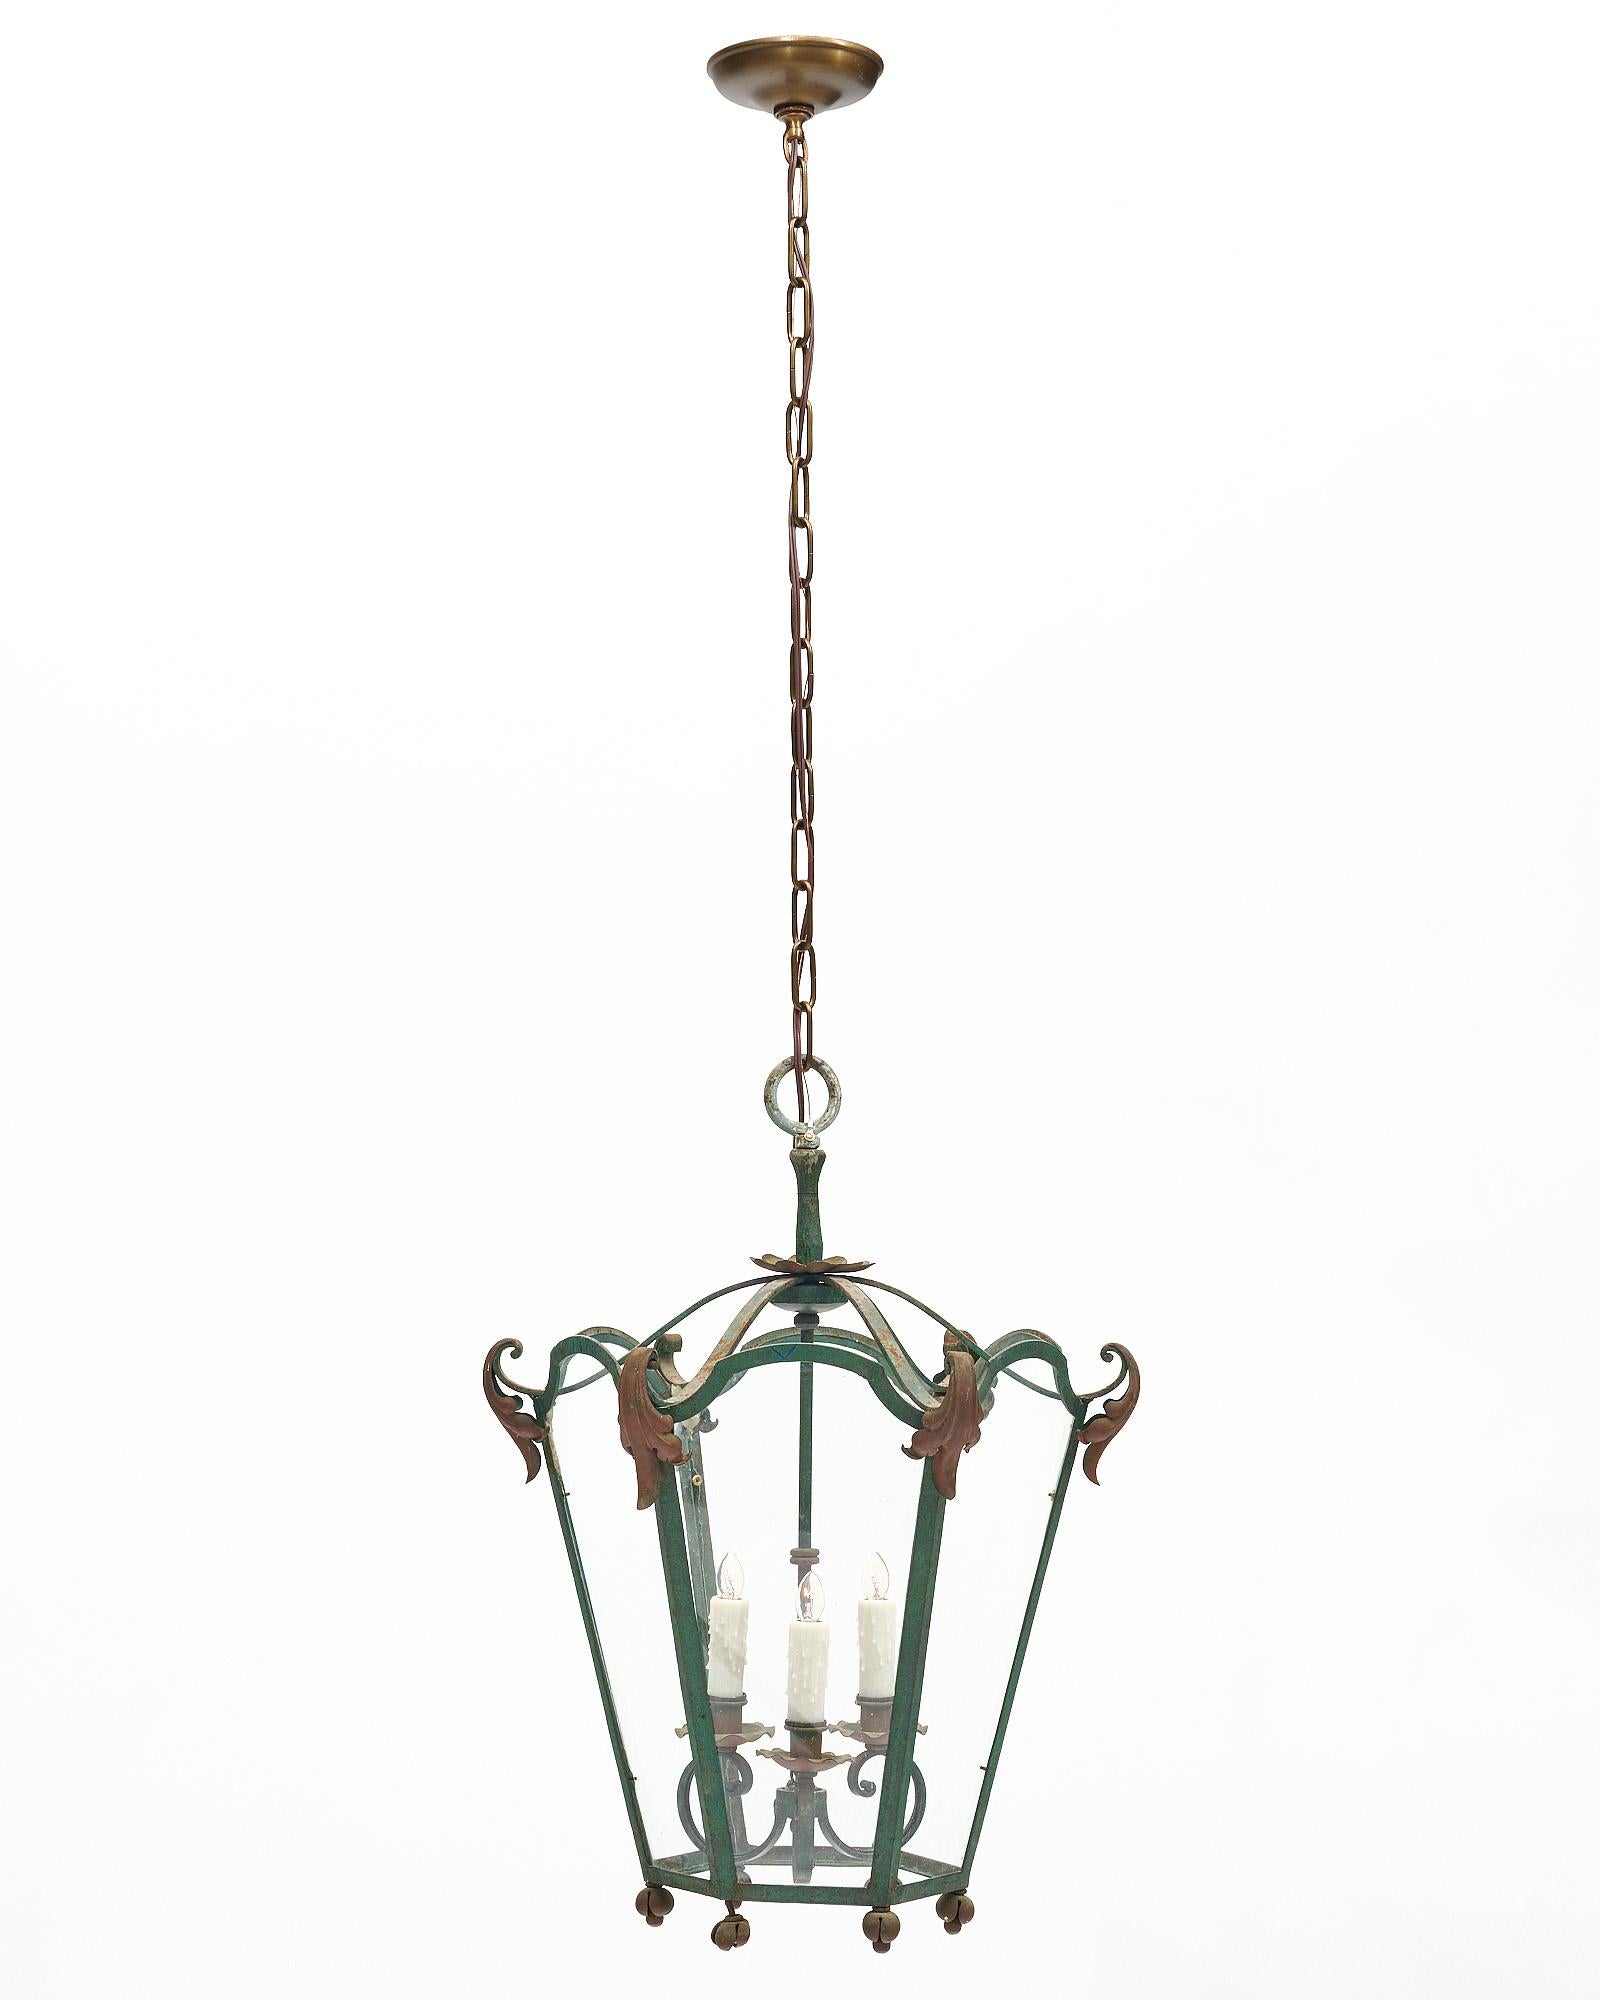 Lanterne de la période Art déco en France. Ce luminaire est fabriqué en fer forgé avec six panneaux de verre entourant trois lampes intérieures à base de candélabre. Un décor de feuilles d'acanthe orne cette pièce de couleur verte. Il a été